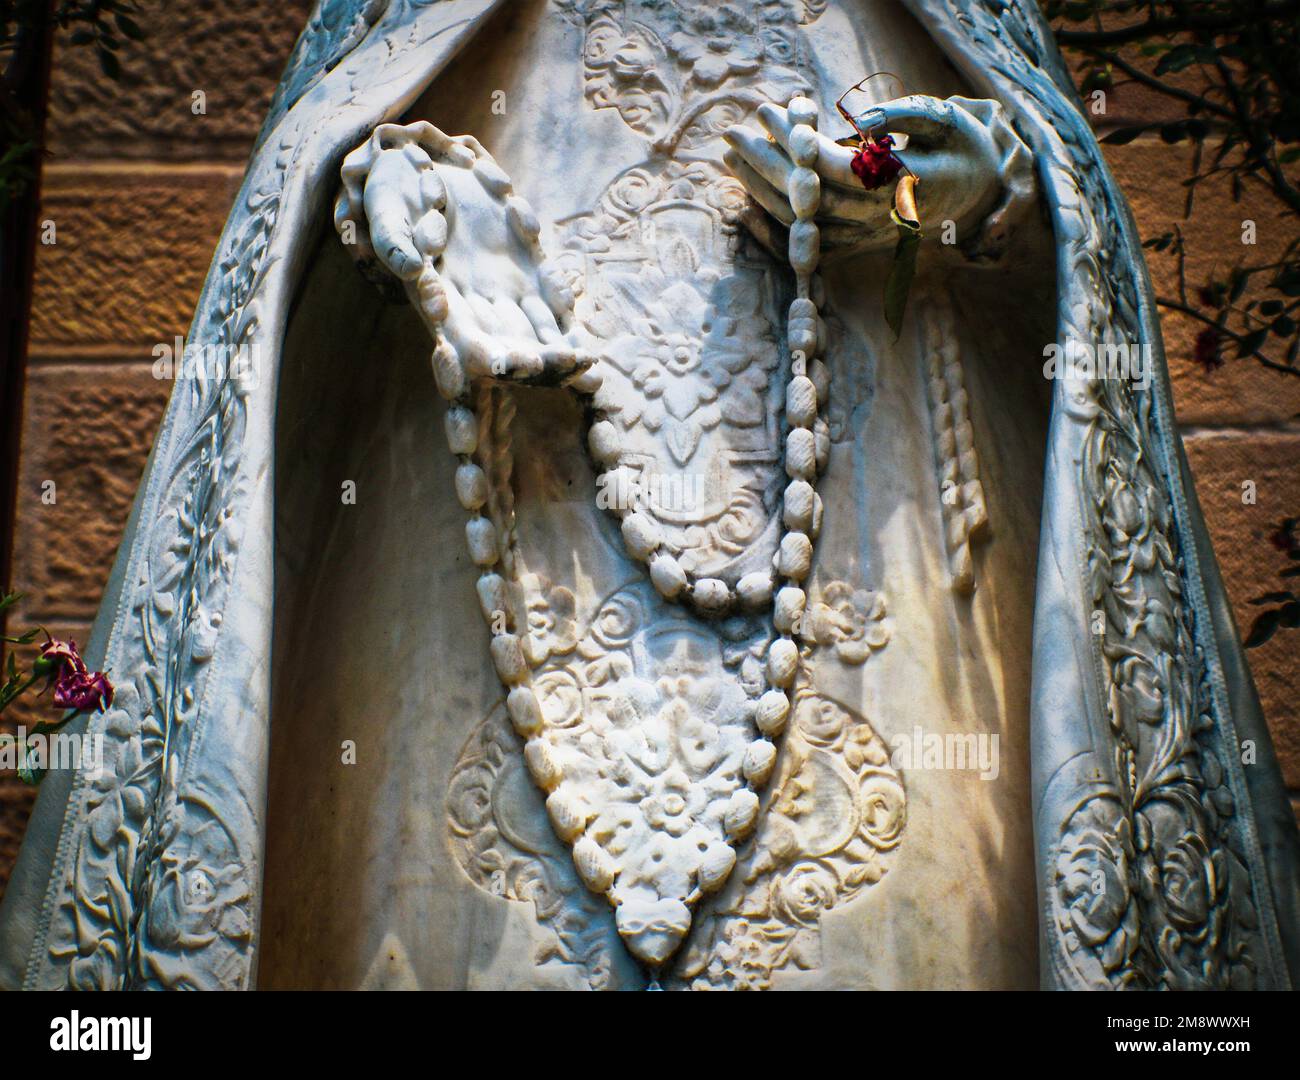 2017 07 19 Santa Fe USA - eine Nahaufnahme der Marmorstatue von maria mit elegantem Bademantel und Rosenkranz. Ohne Kopf gekürzt. Jemand hat ihr eine Rosenknospe verpasst Stockfoto